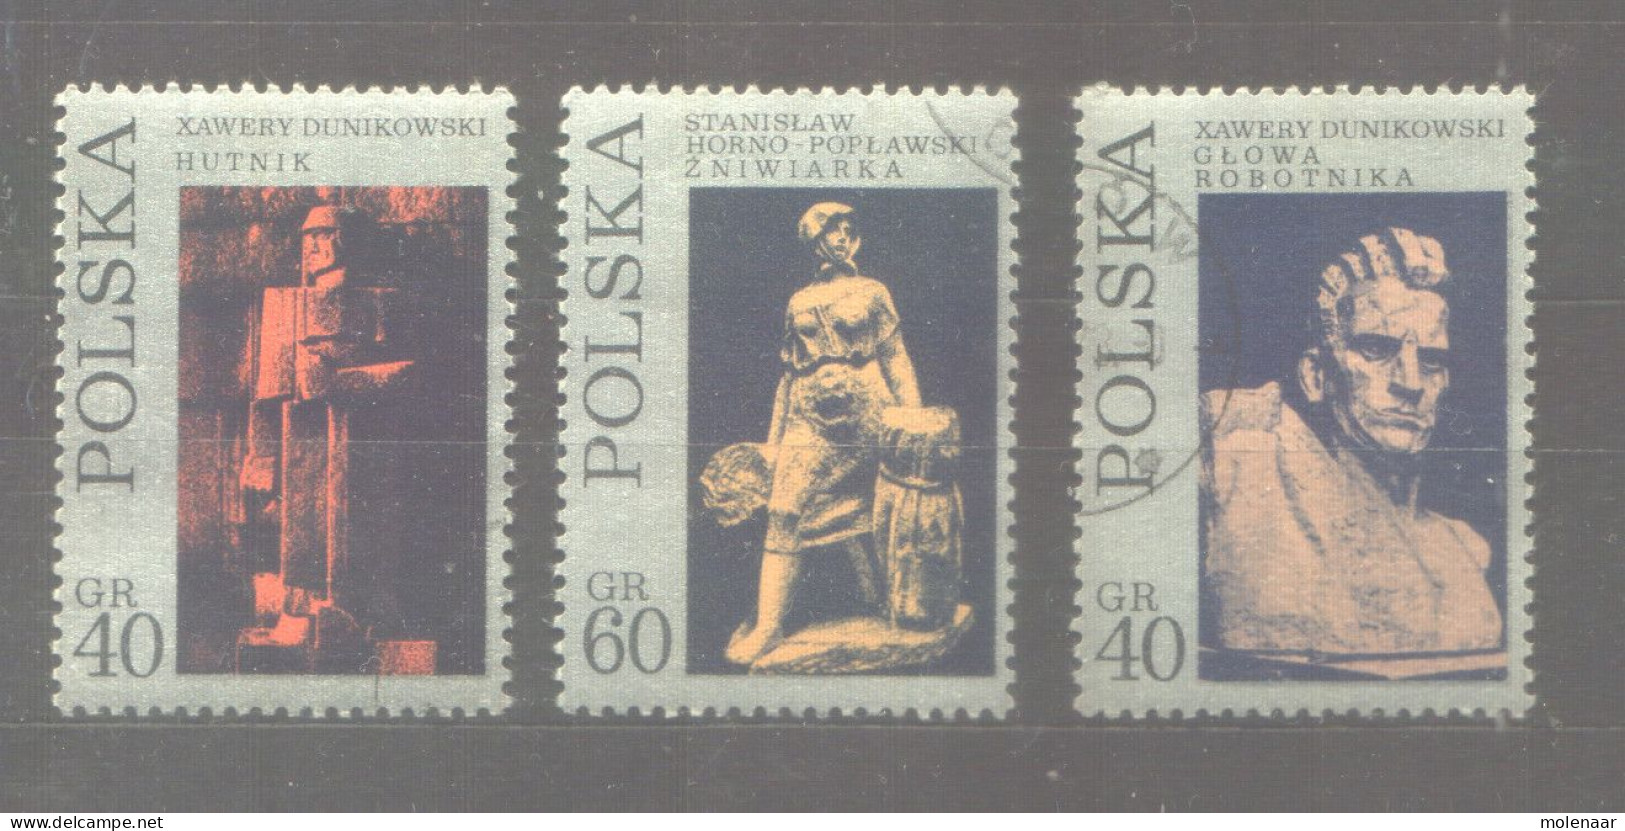 Postzegels > Europa > Polen > 1944-.... Republiek > 1971-80 > Gebruikt 2093,2095,2096 (12055) - Usados